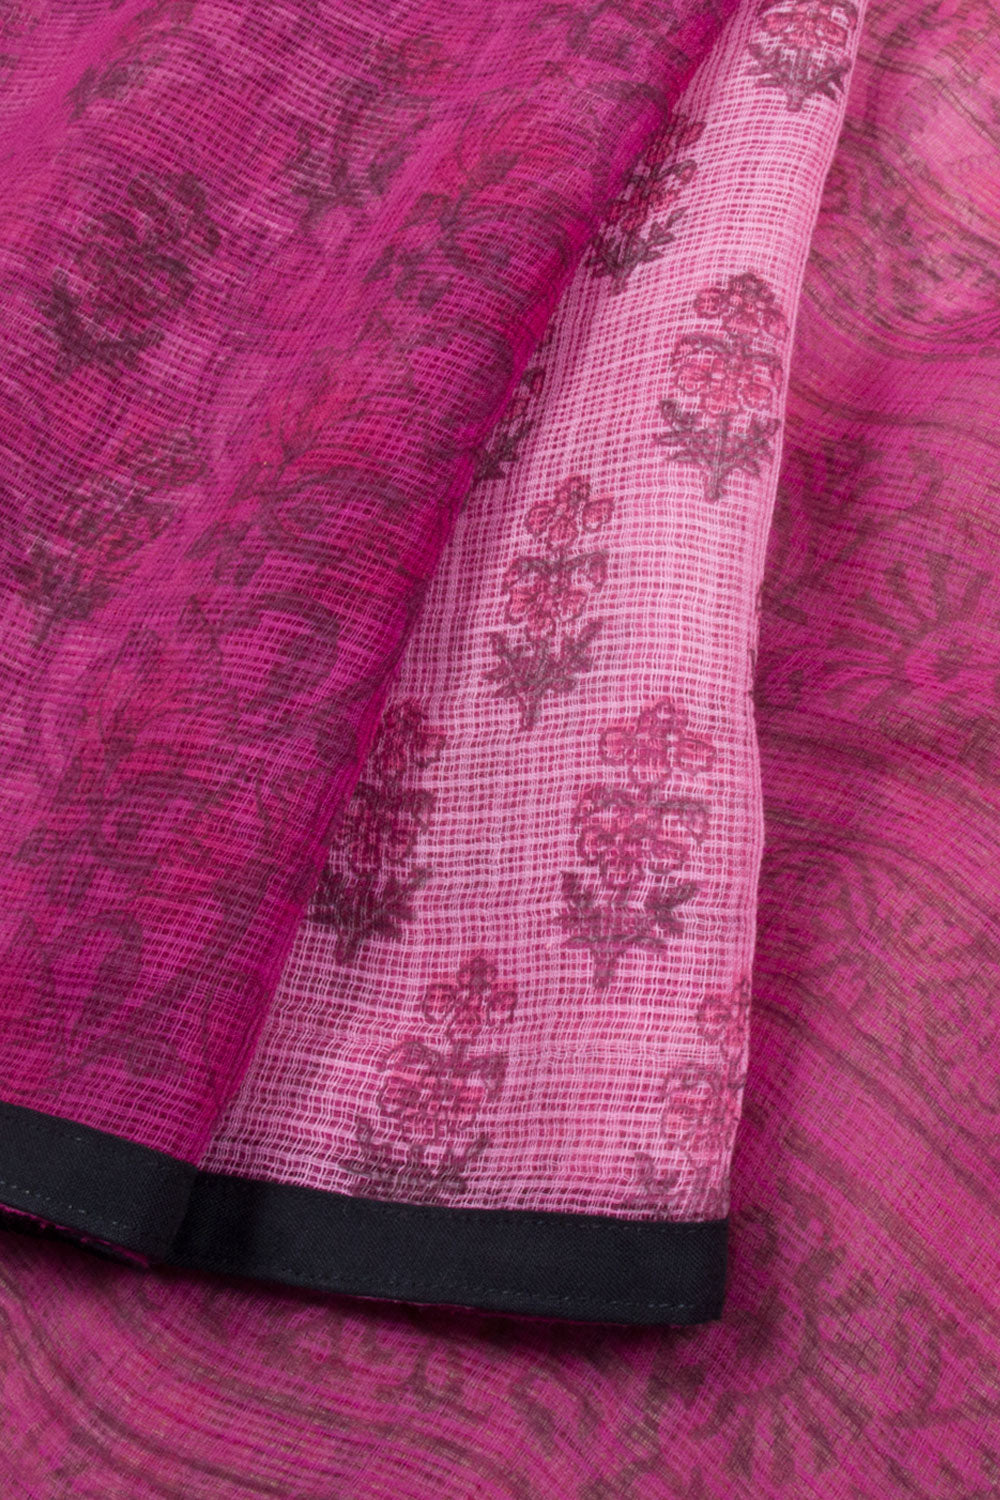 Pink Hand Block Printed Kota Cotton Saree 10059916